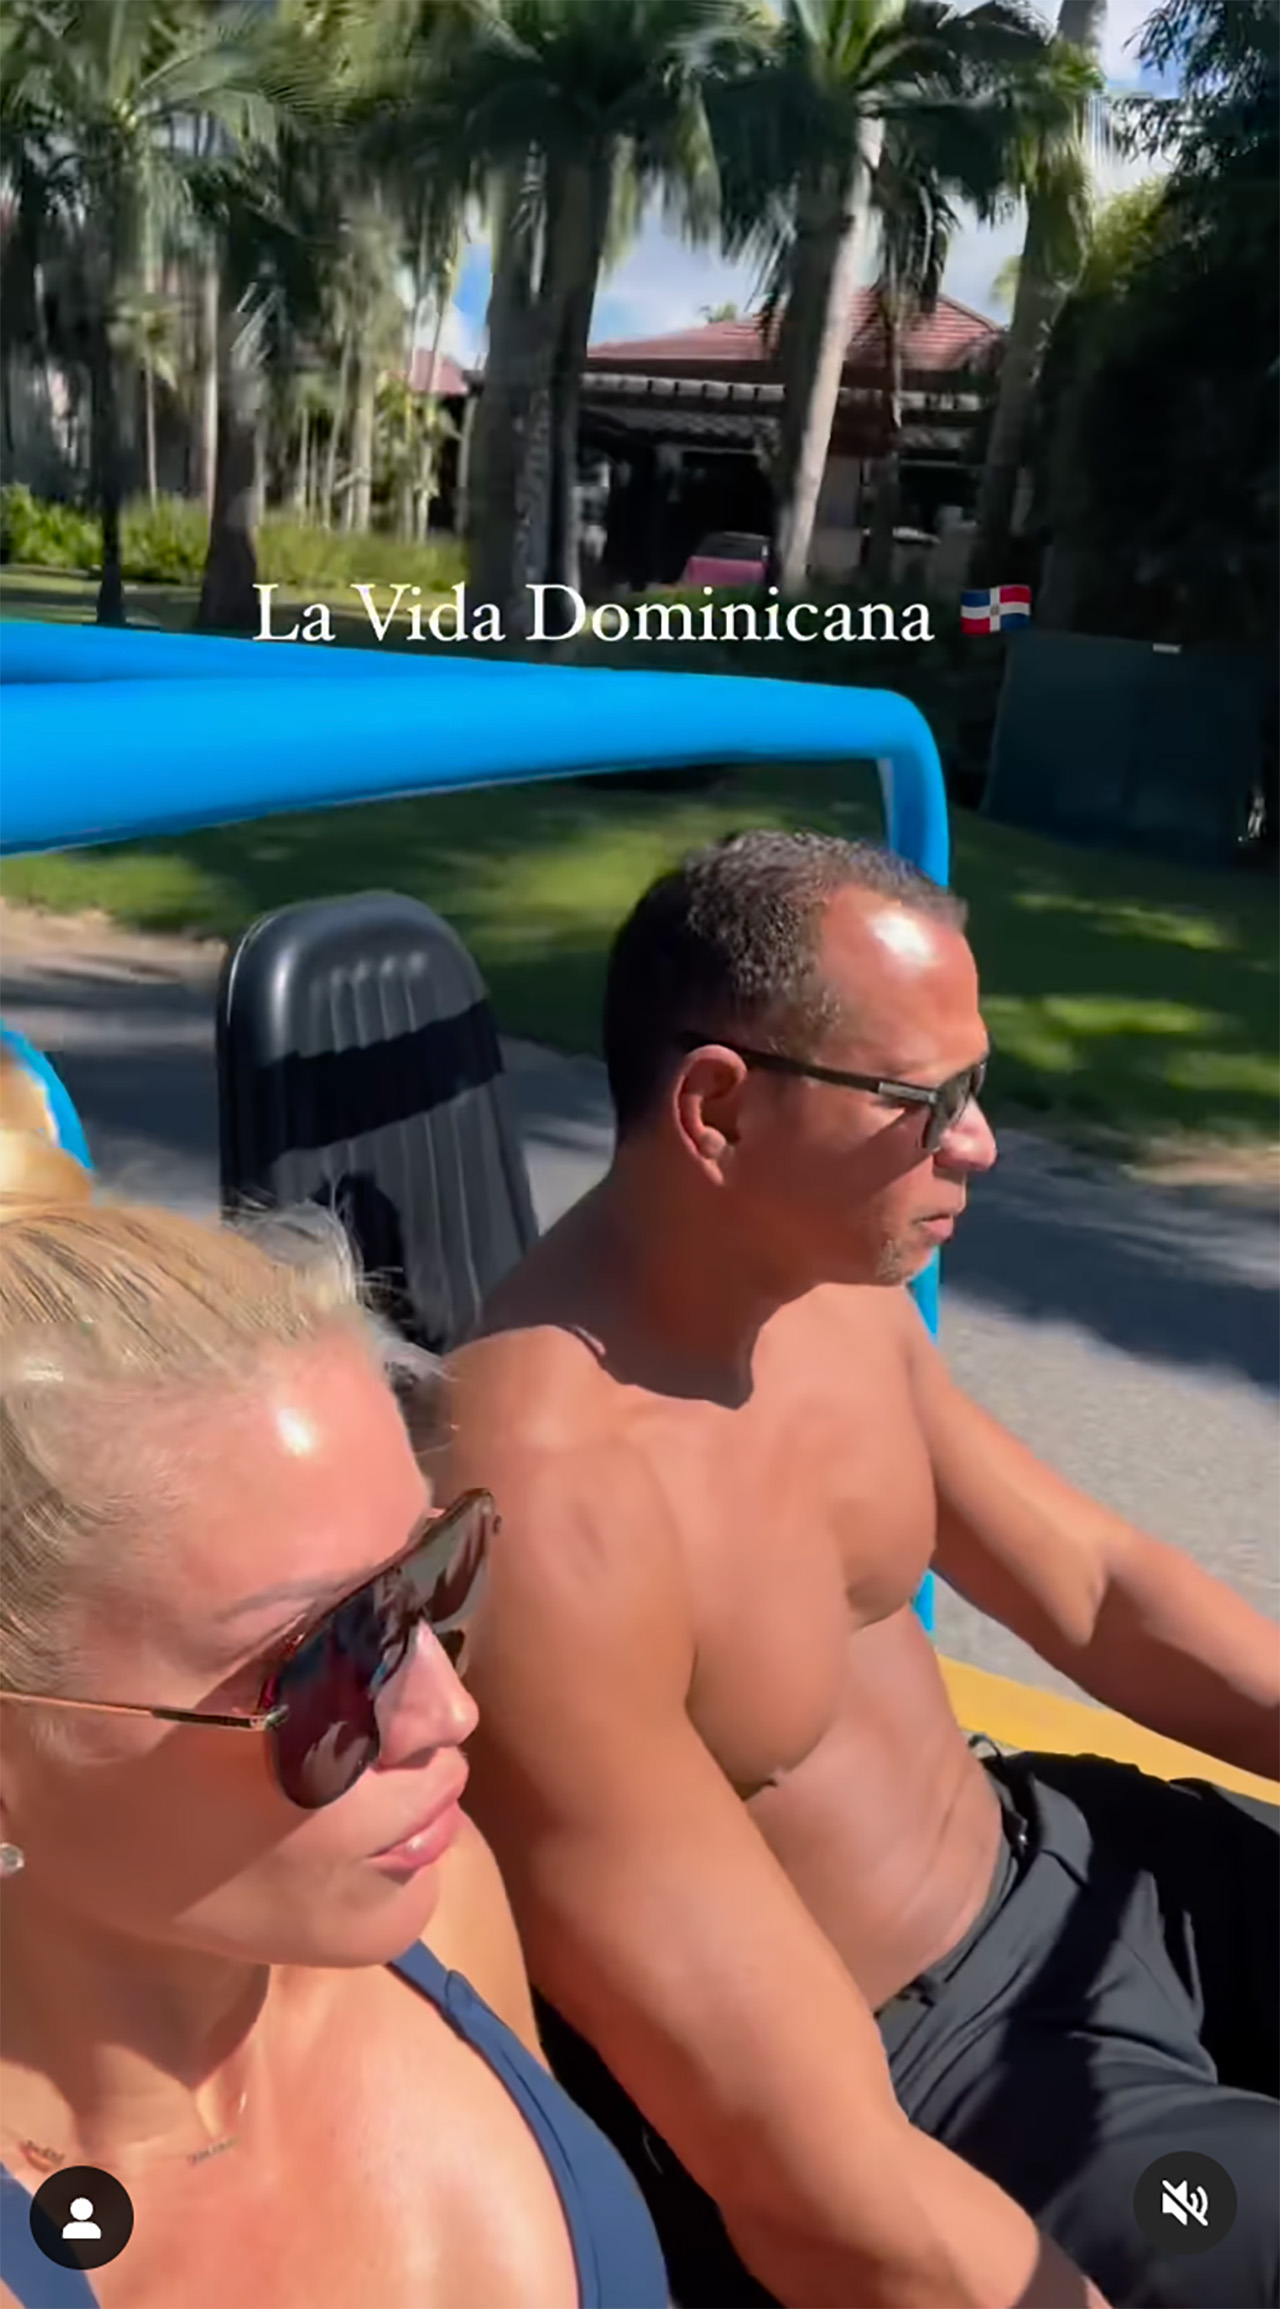 A-Rod comparte un video de su viaje a República Dominicana.